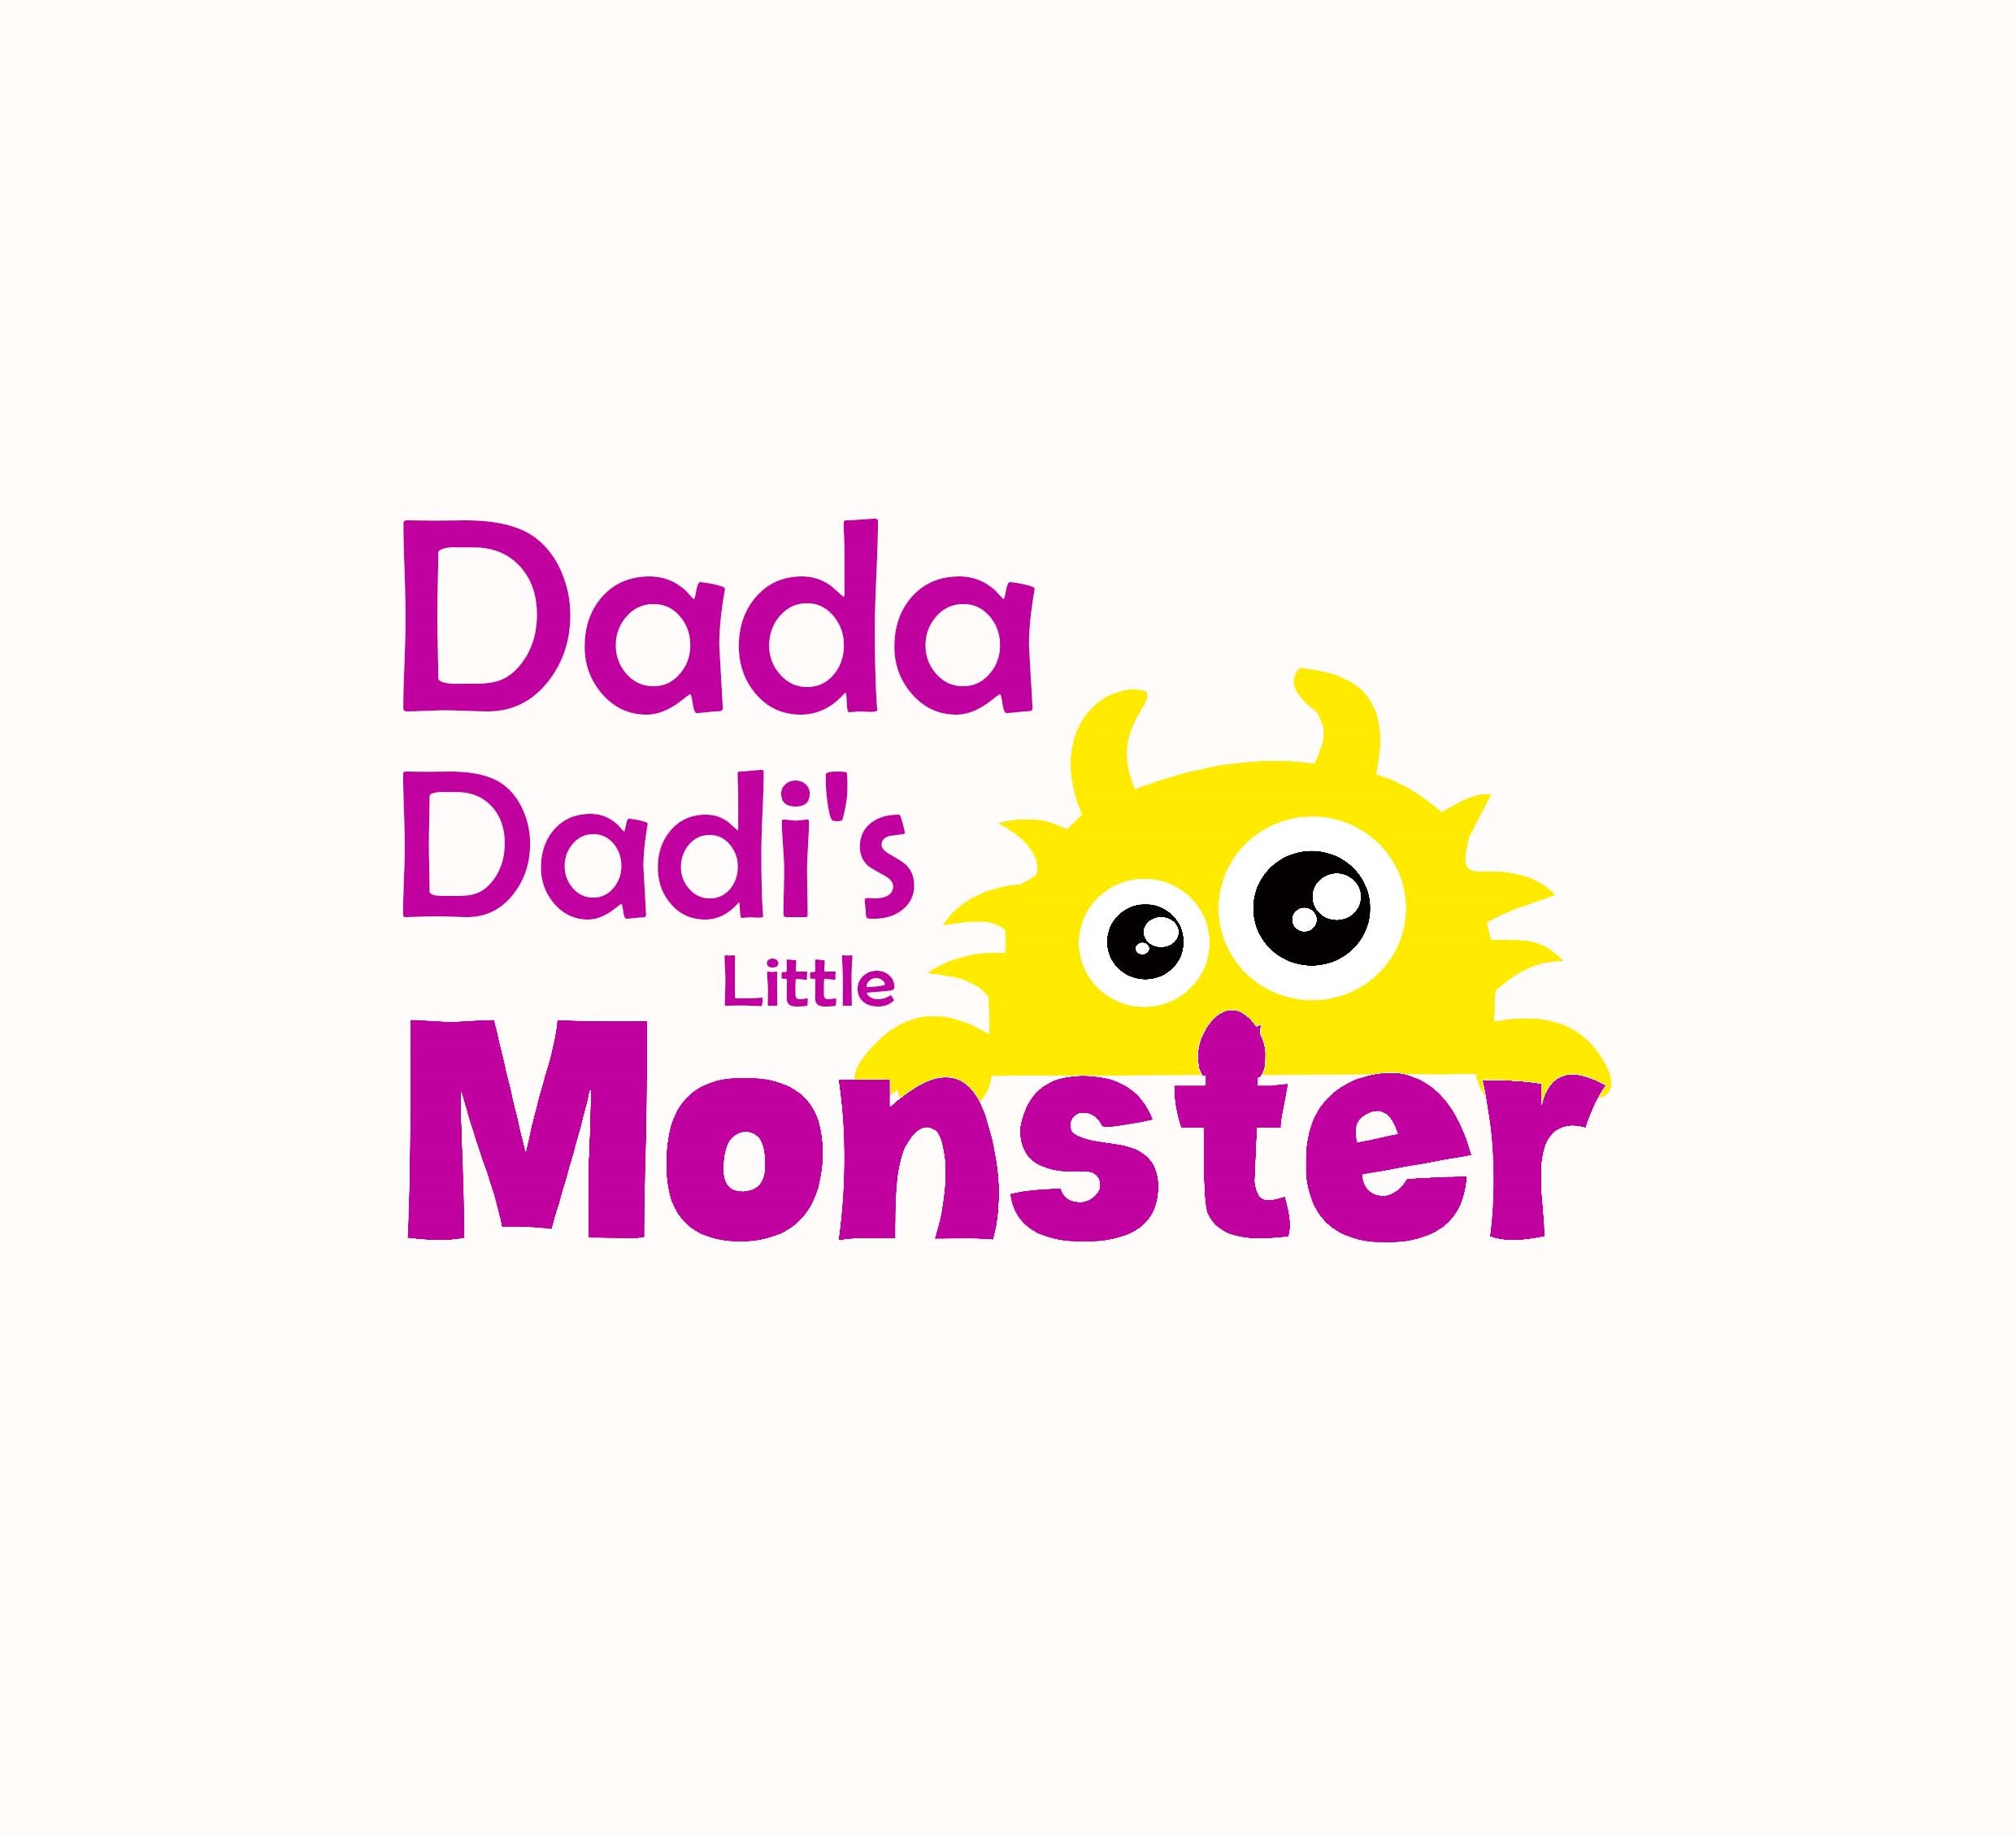 Dada-dadis-little-monster.jpg